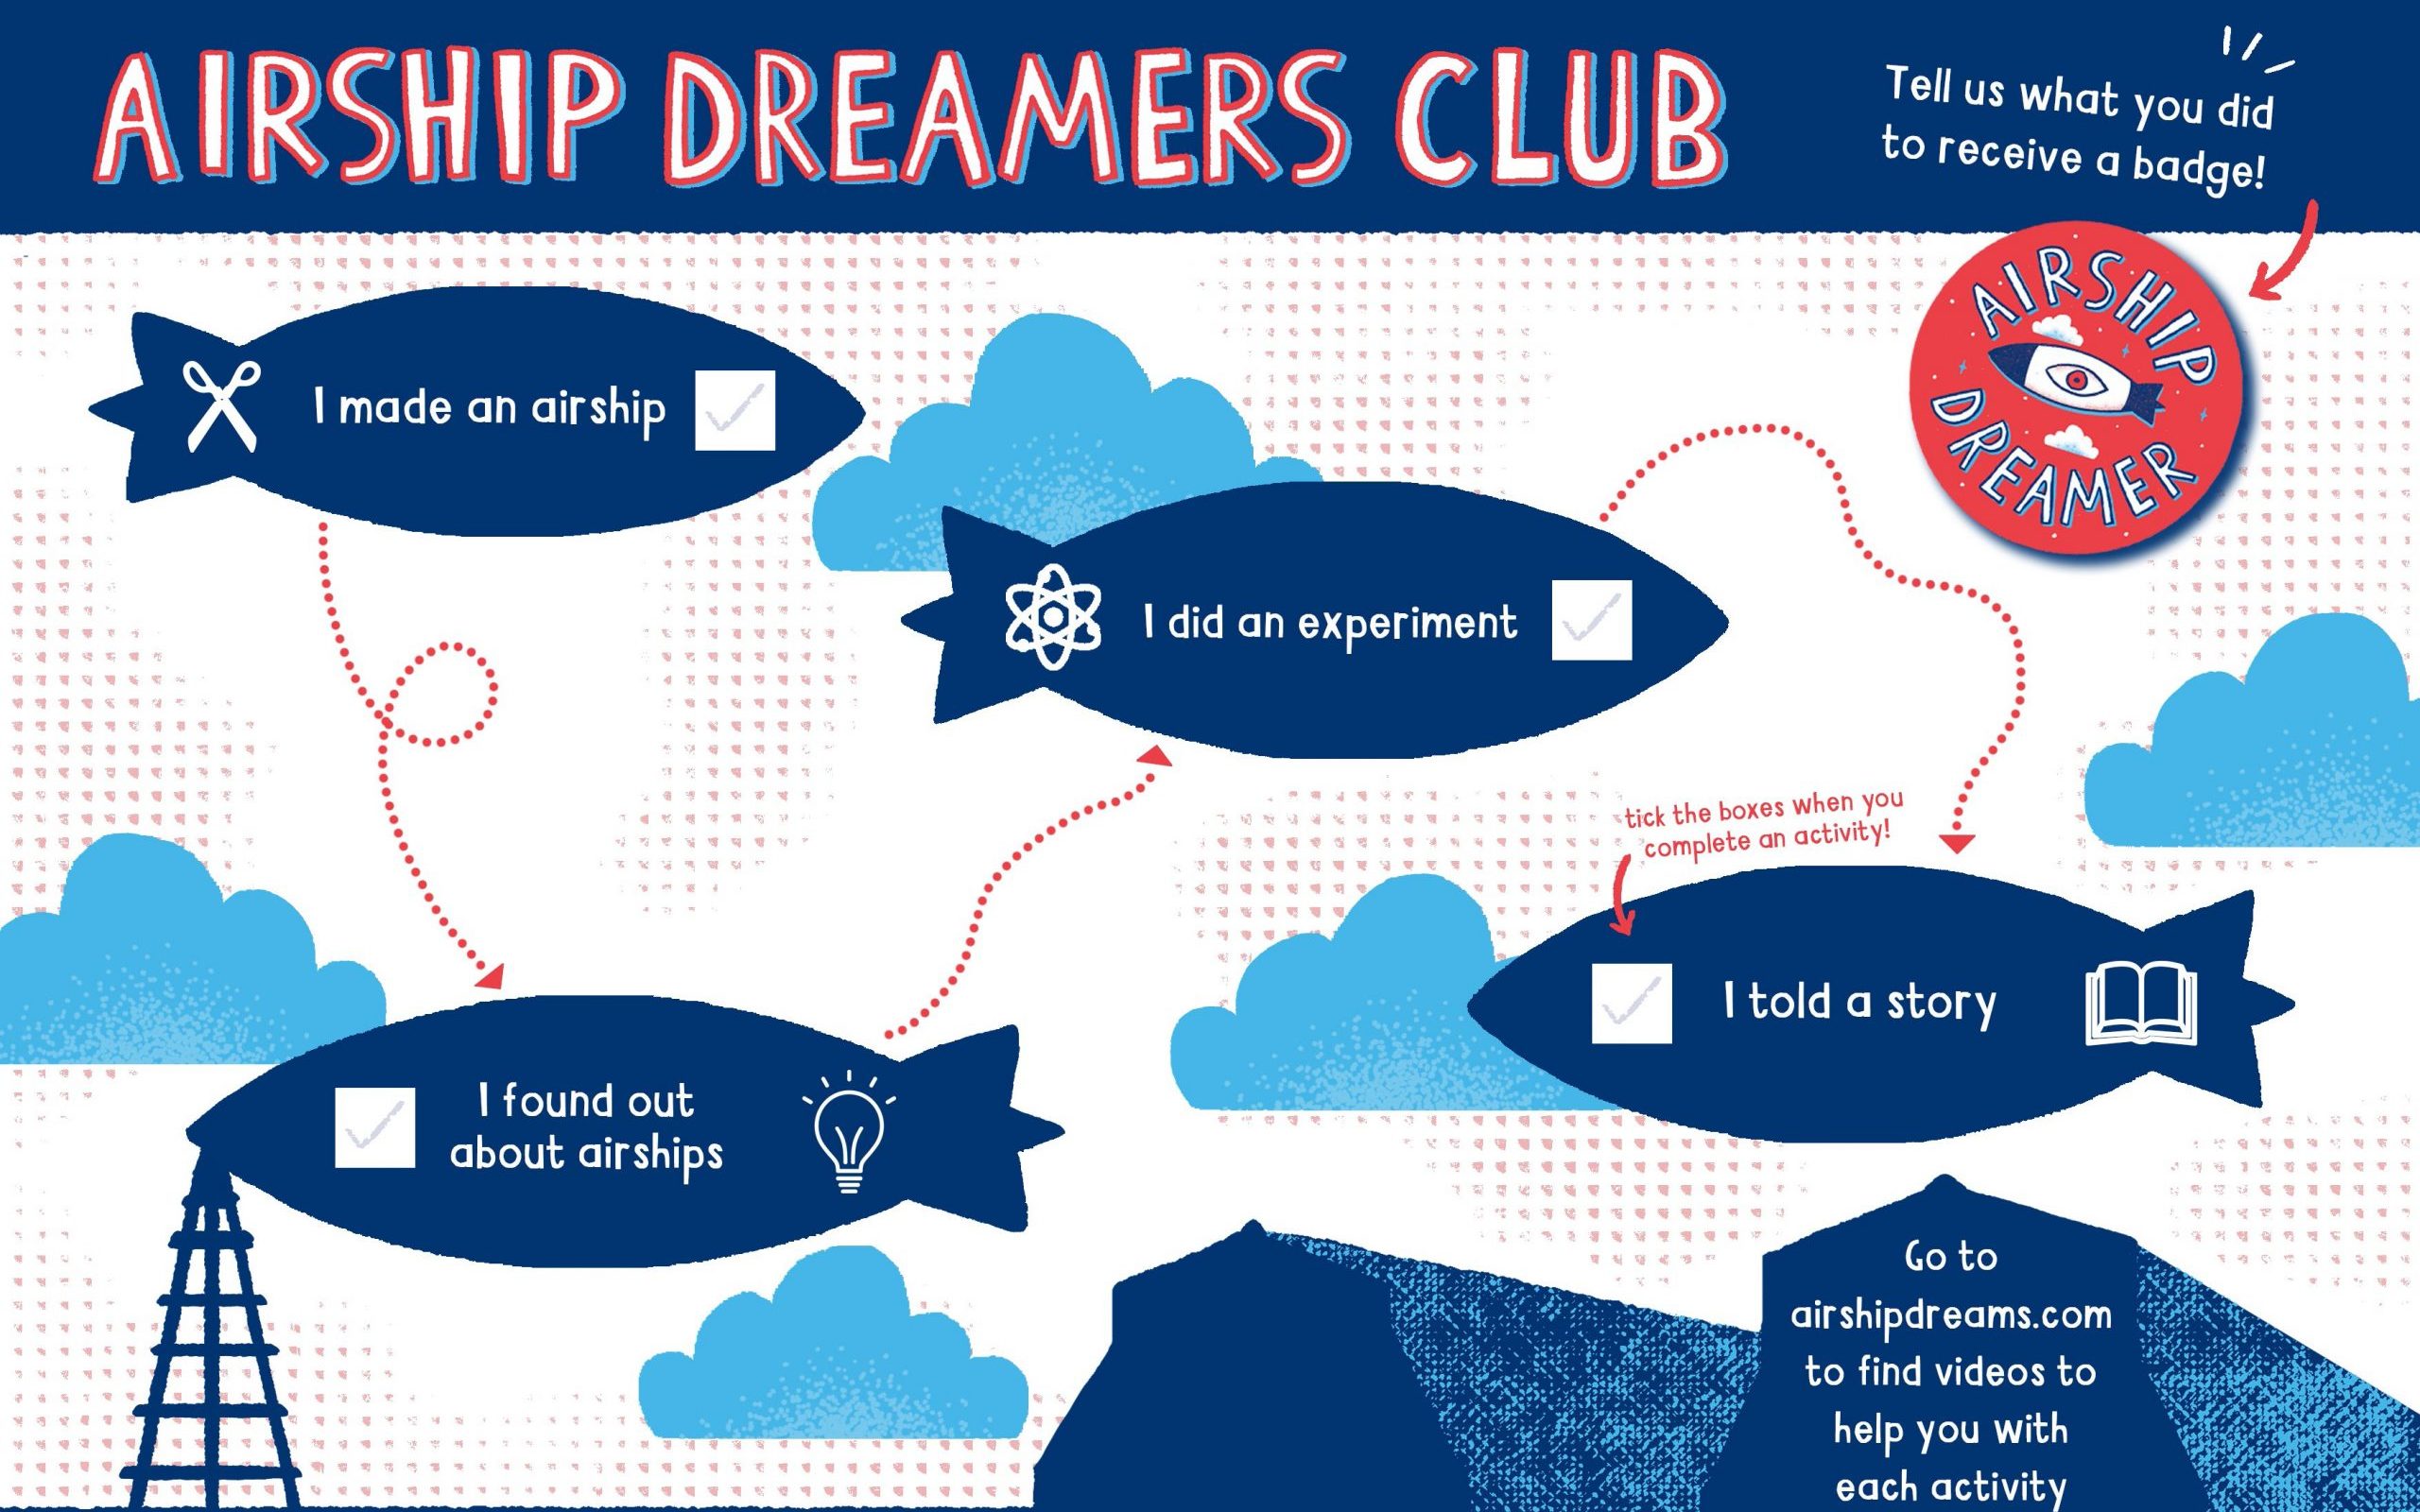 Airship Dreamers Club - Bedford Creative Arts